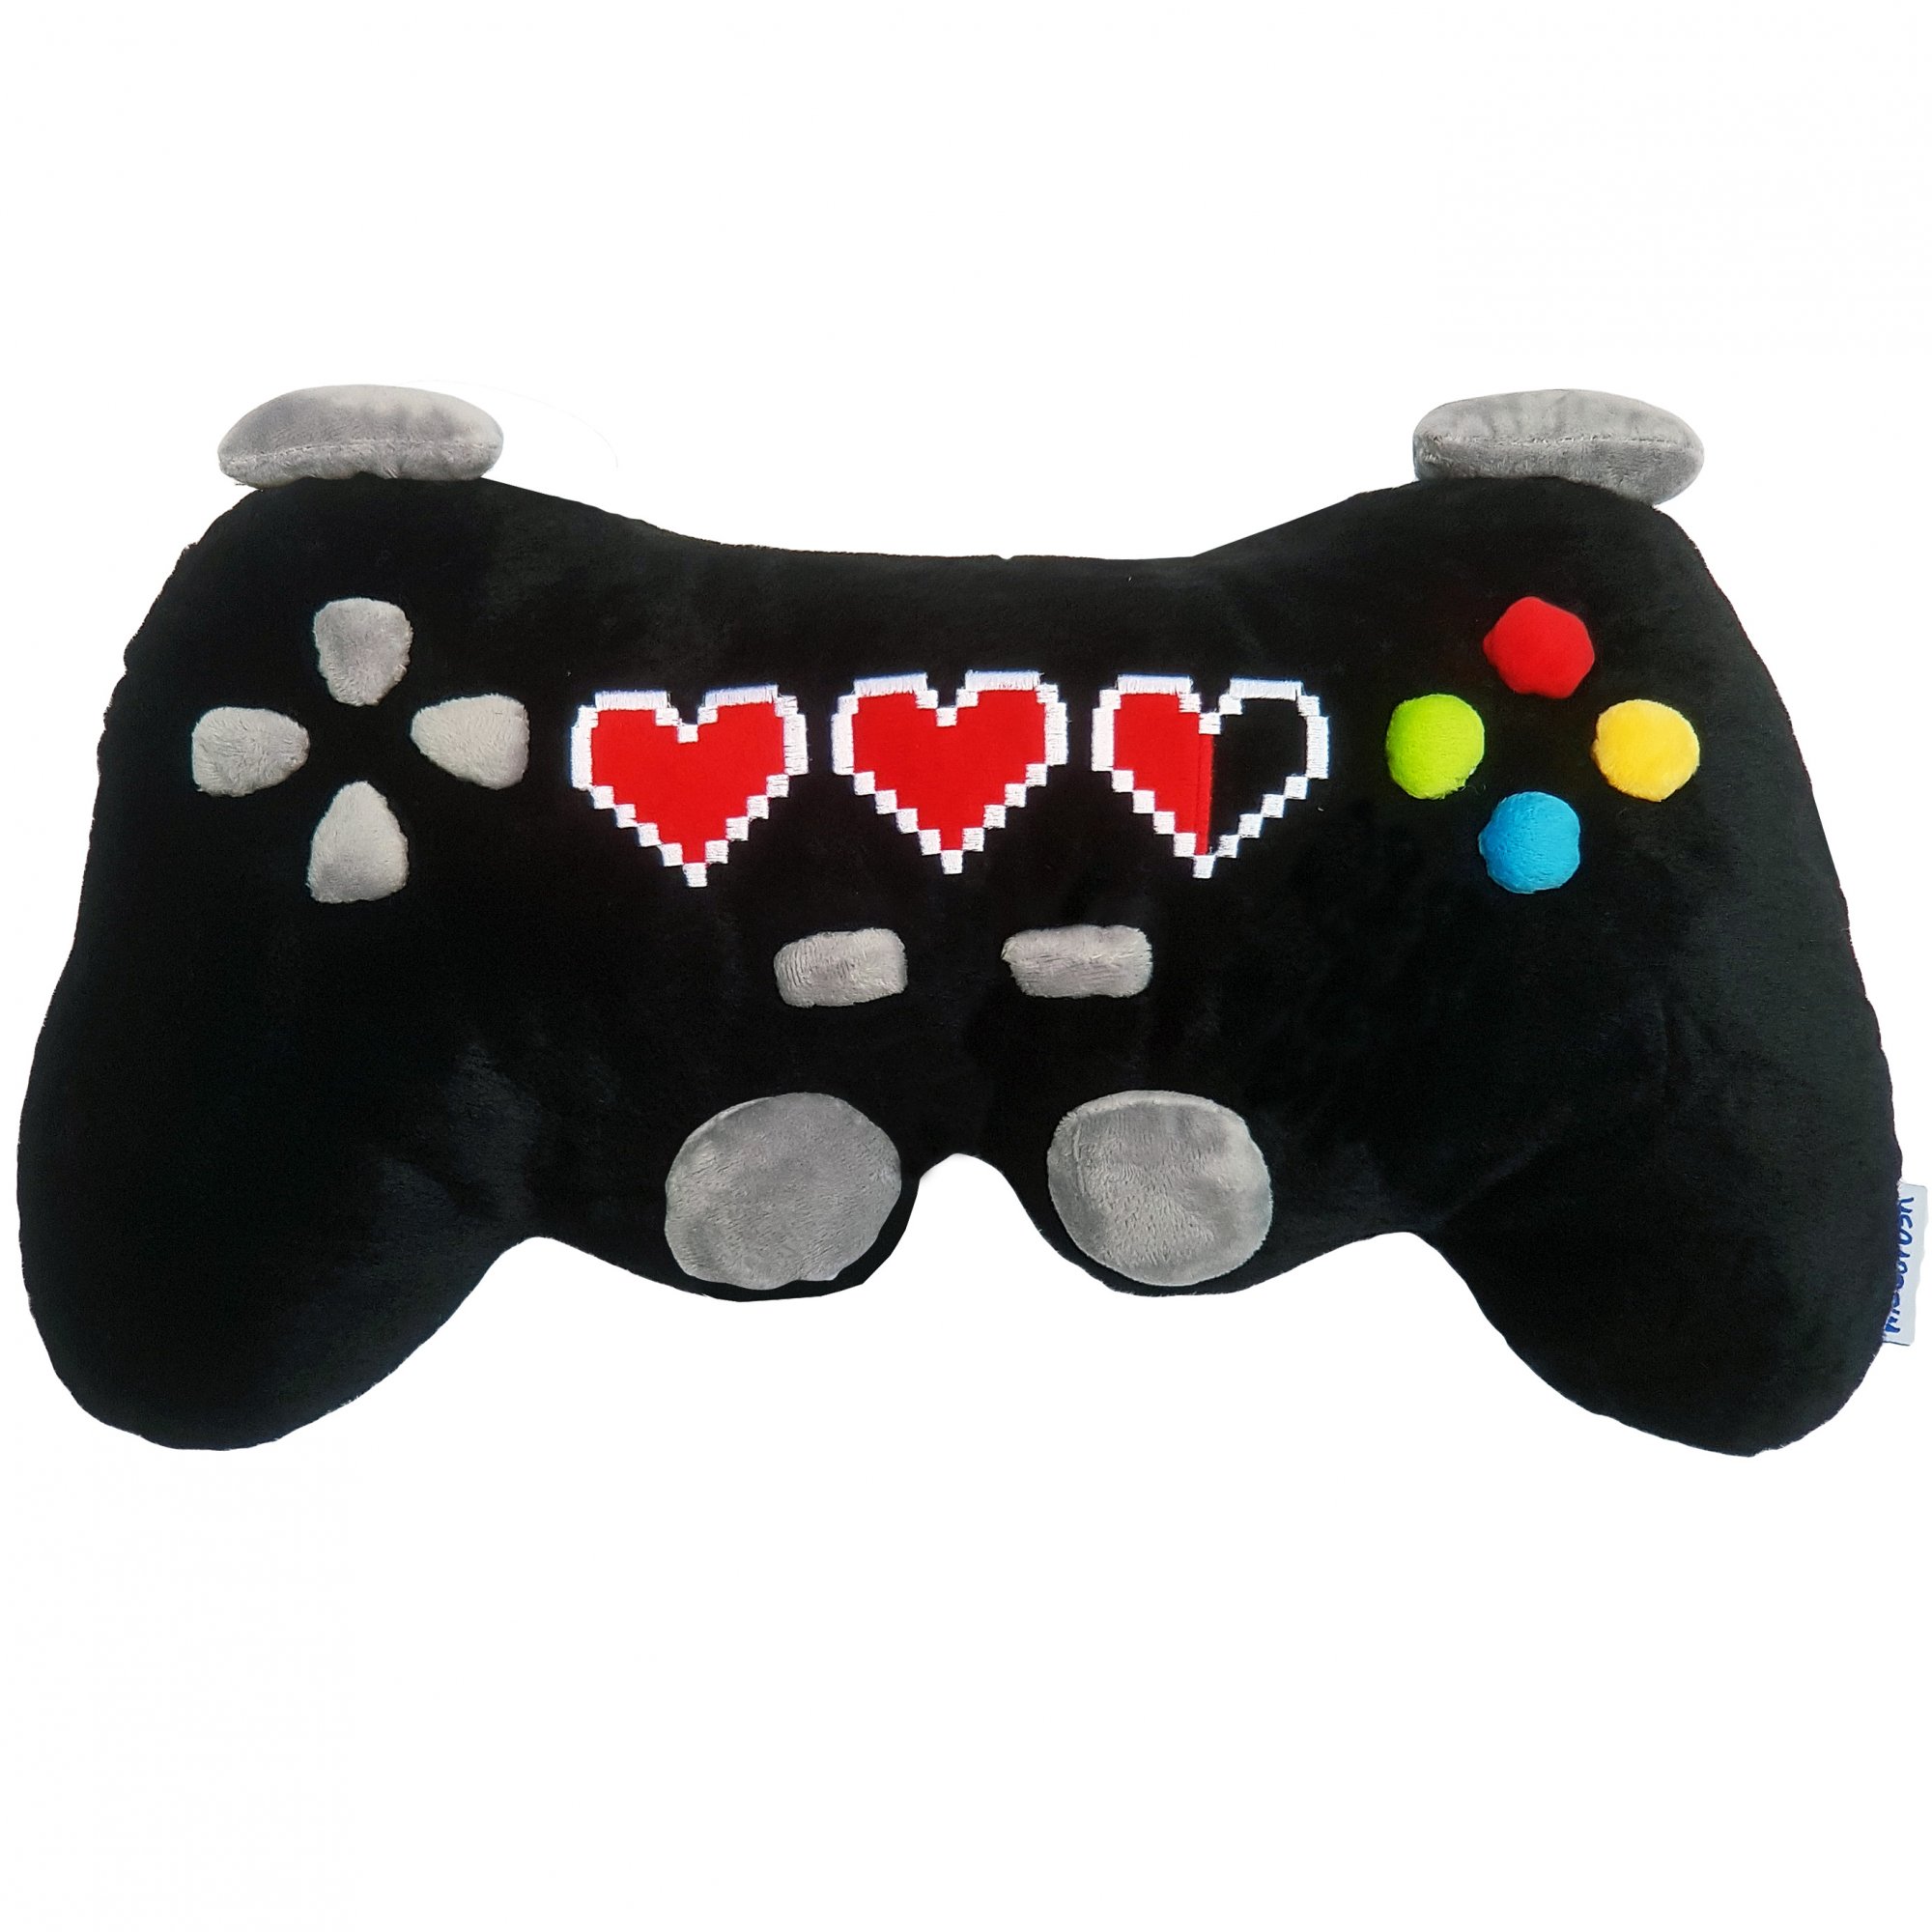 Game Controller Kissen: Play with no Limits - Jetzt kaufen und zocken! –